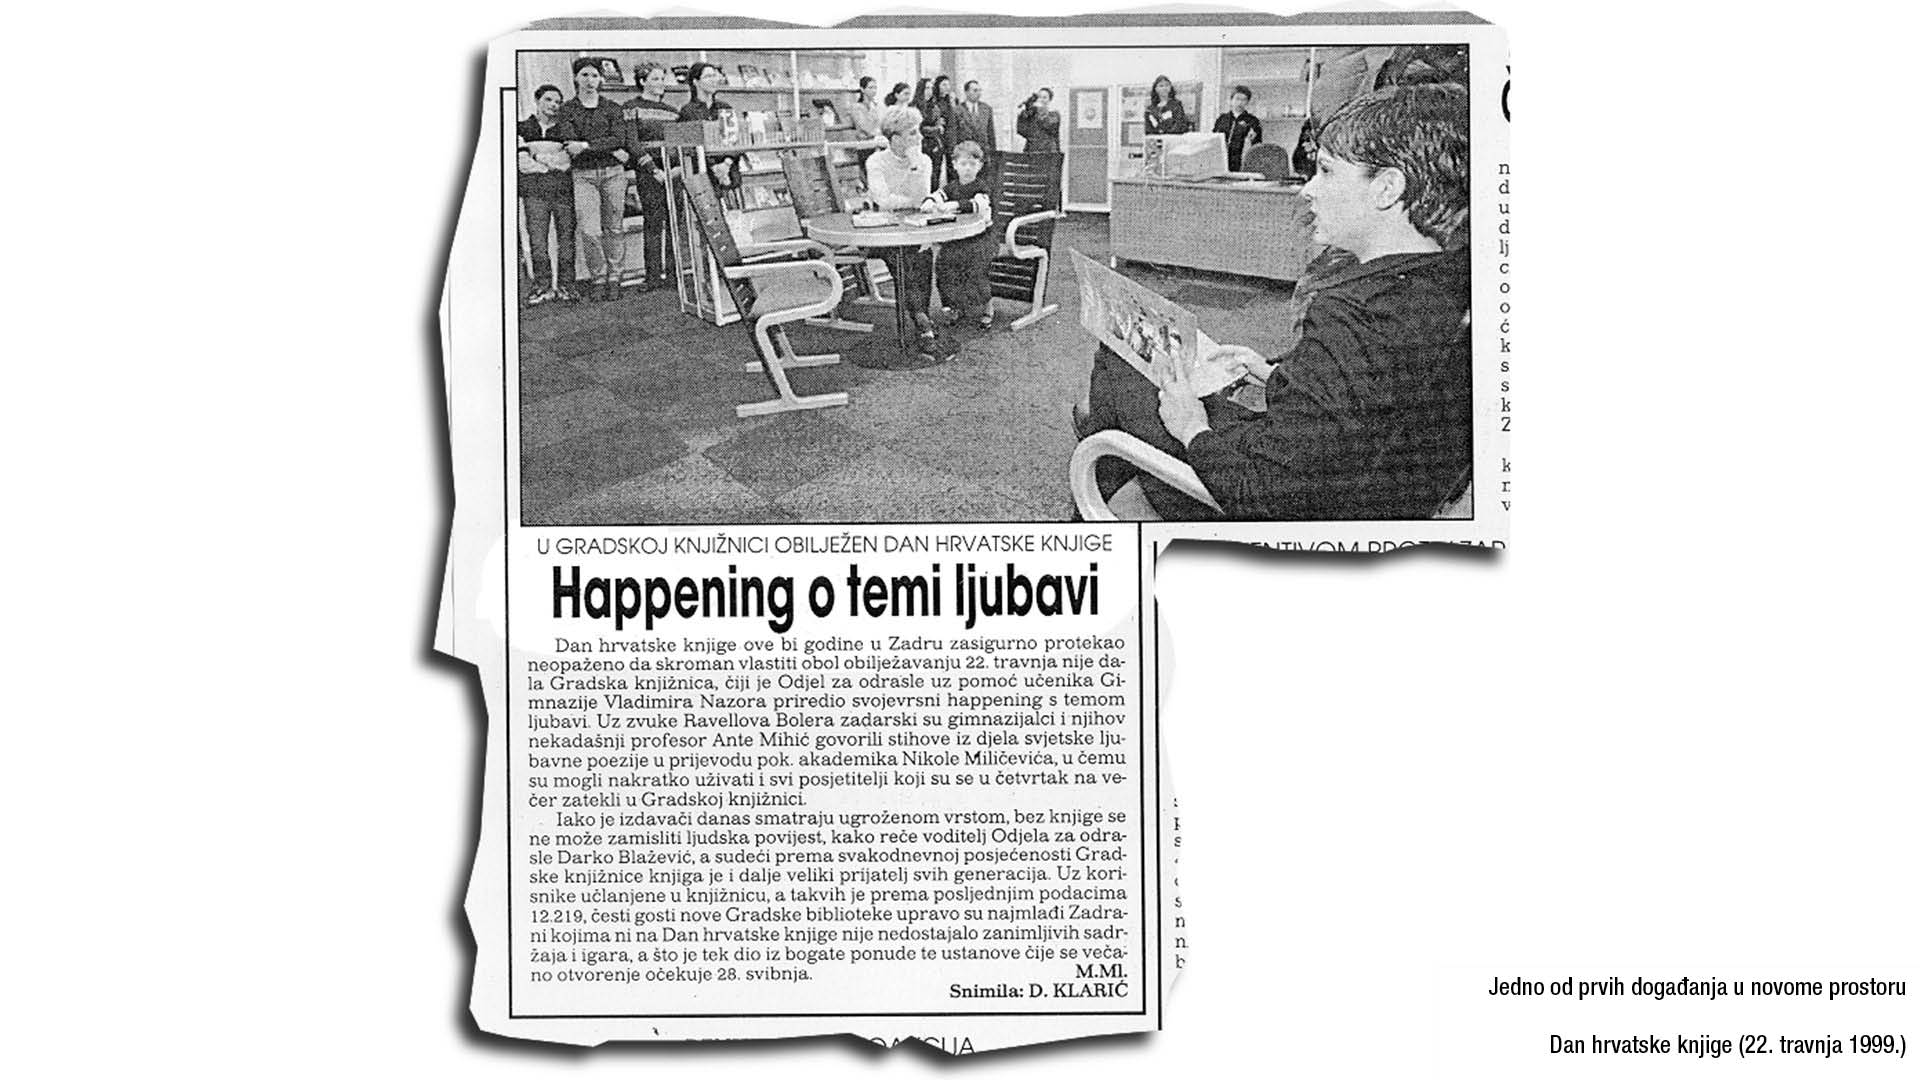 Jedno od prvih događanja u novome prostoru: Dan hrvatske knjige (22. travnja 1999.)